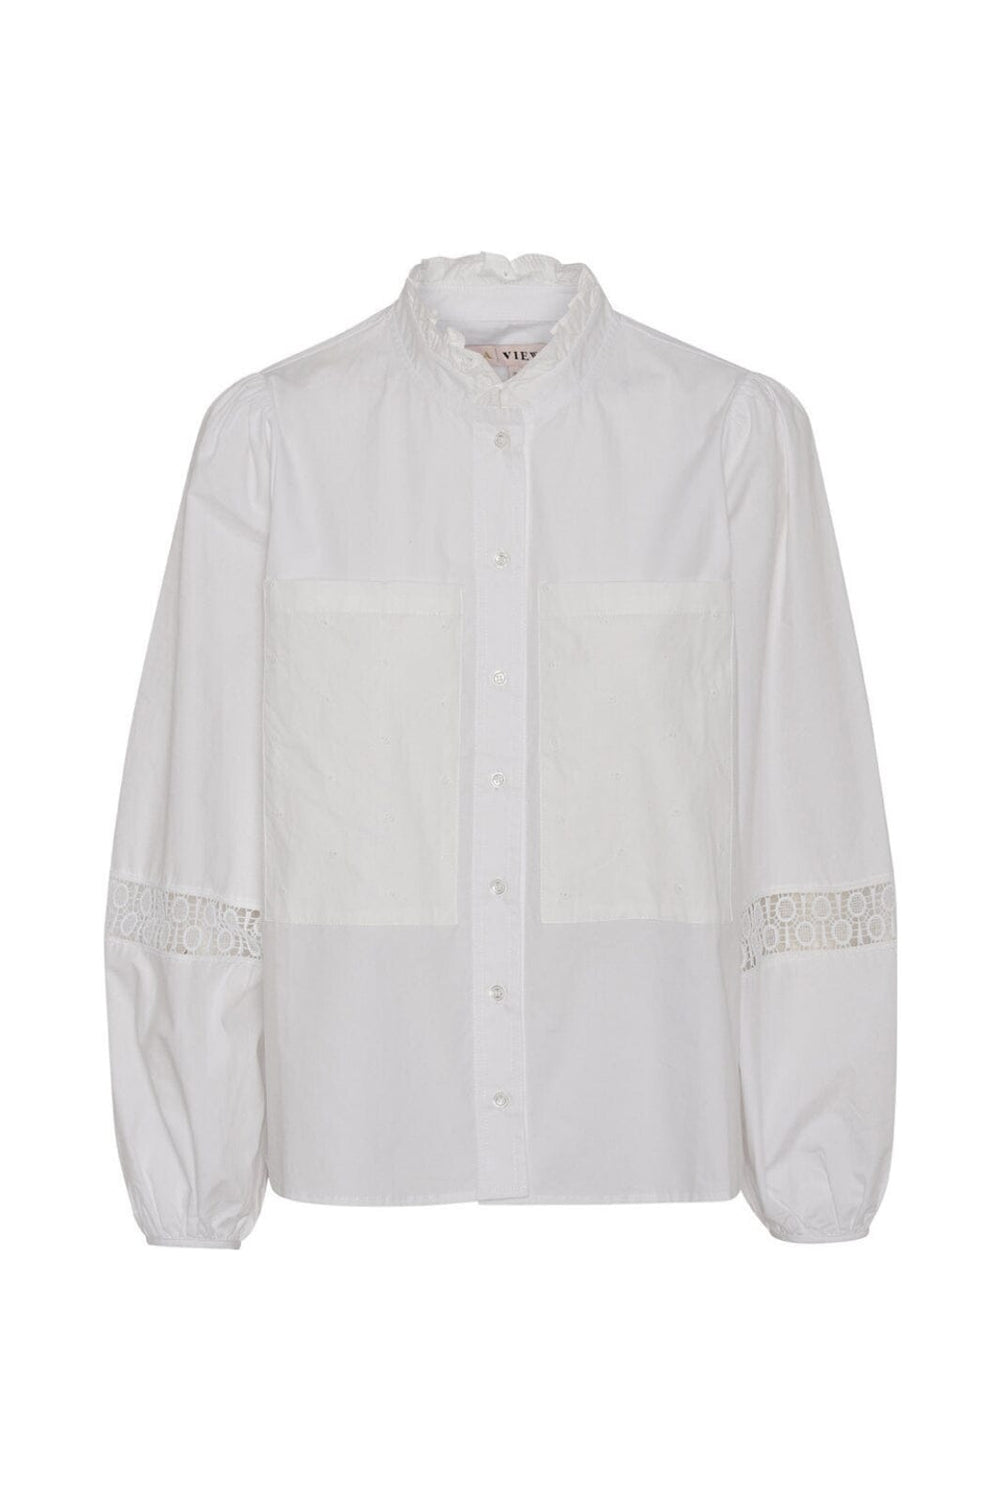 A-VIEW - Tiffany Shirt - 000 White Skjorter 